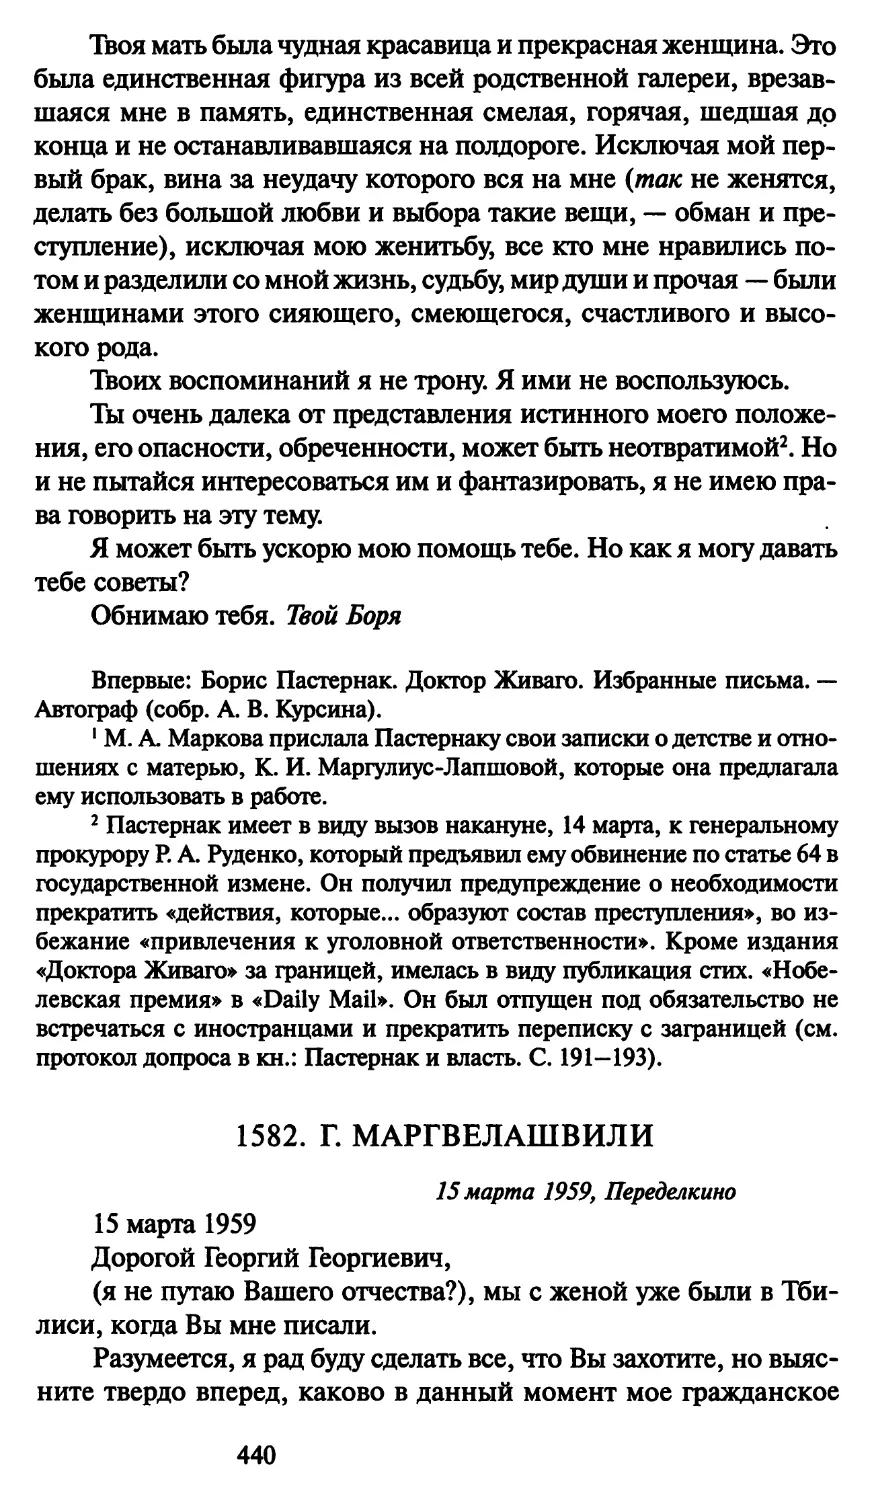 1582. Г. Маргвелашвили 15 марта 1959